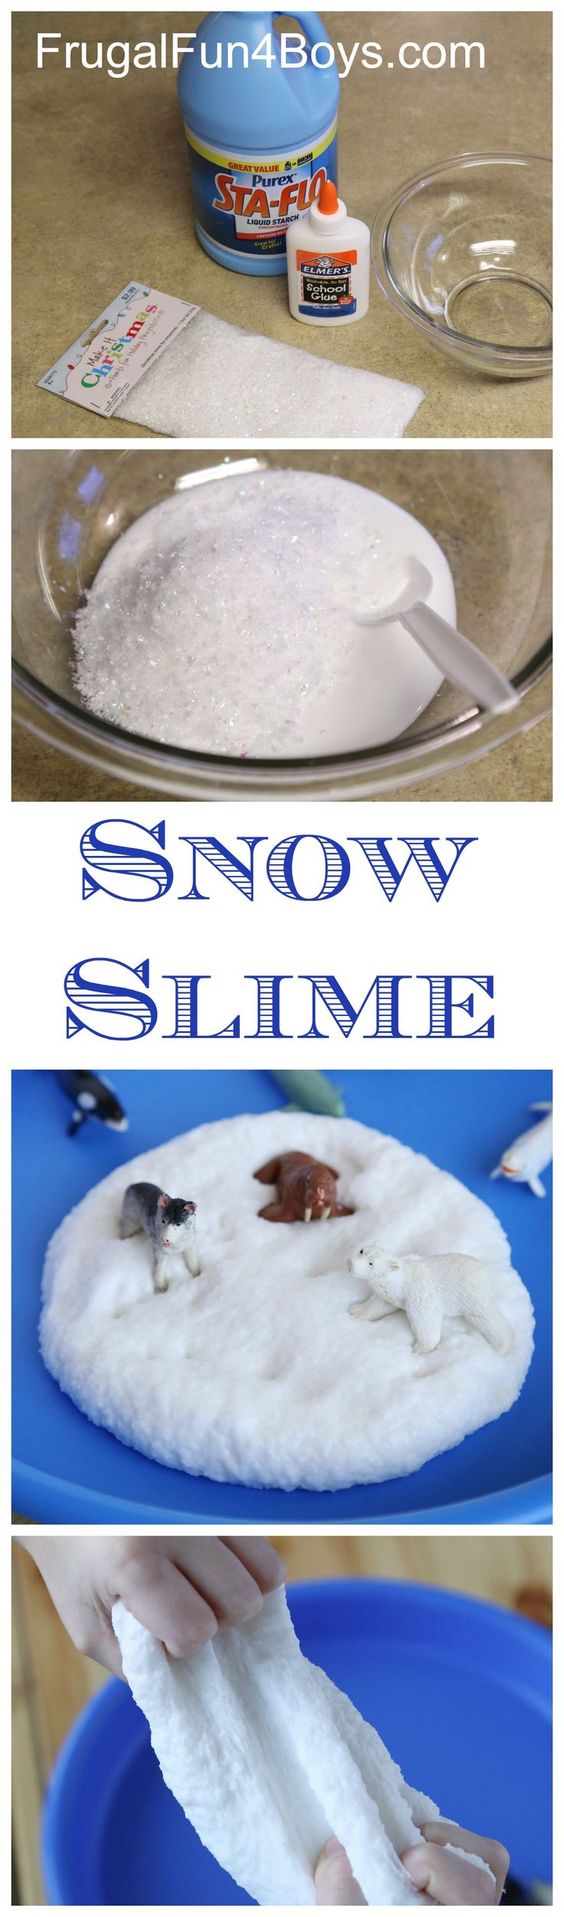 snow slime.jpg